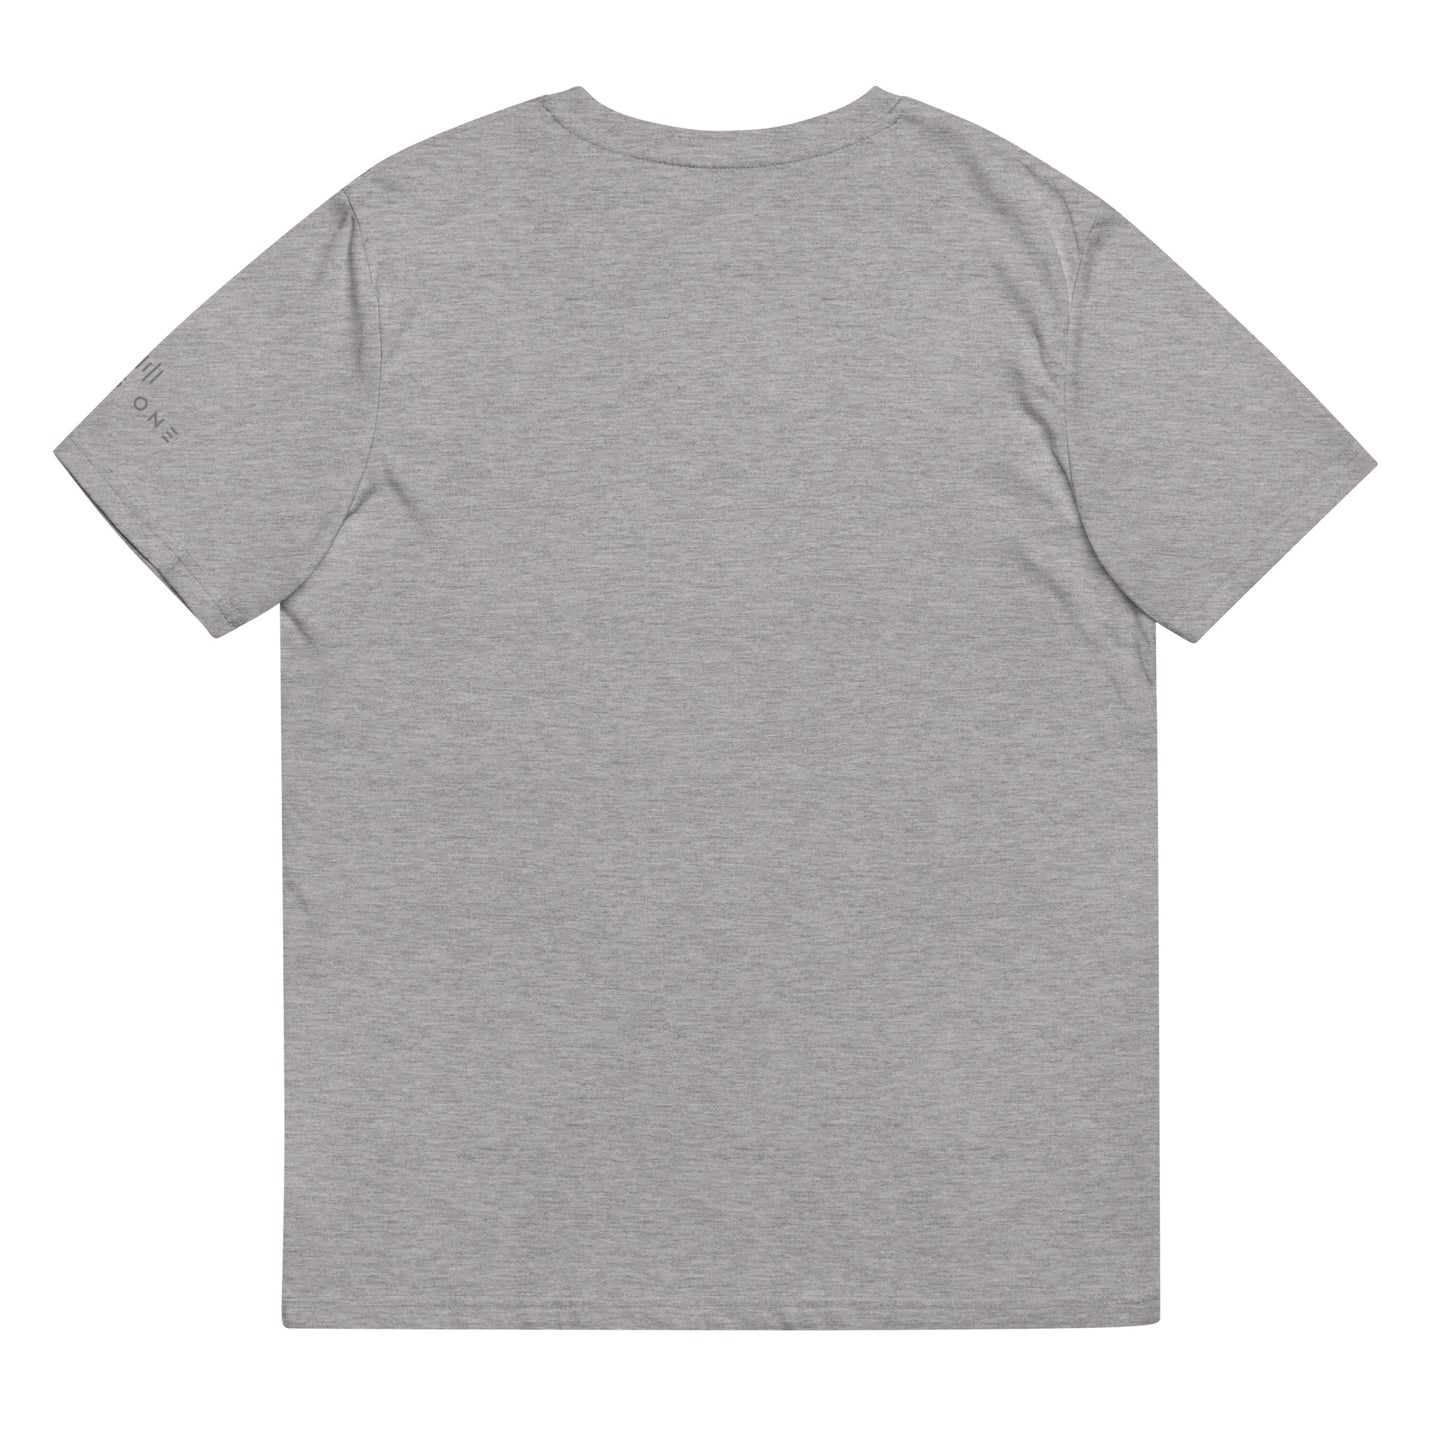 Tribe Mic-e (v1) Unisex organic cotton t-shirt